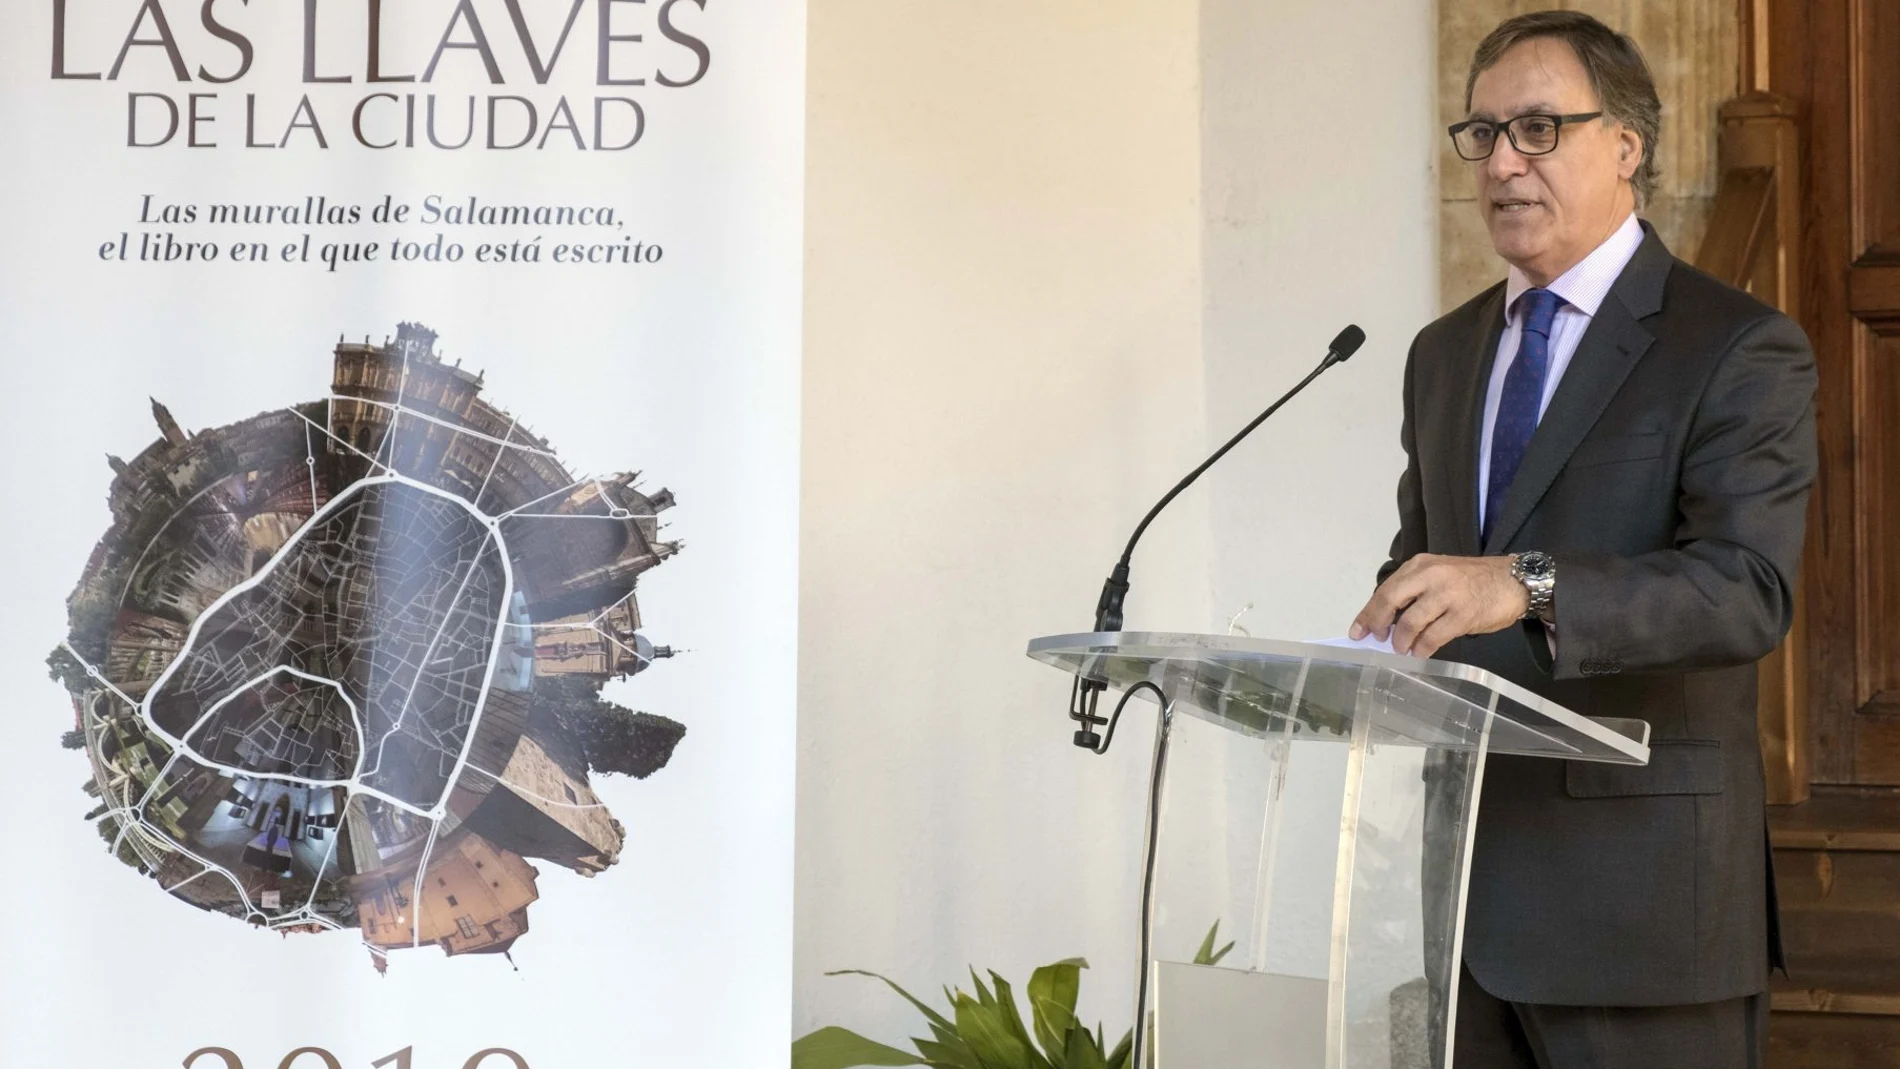 El alcalde de Salamanca, Carlos García Carbayo, presenta el programa «Las Llaves de la Ciudad»